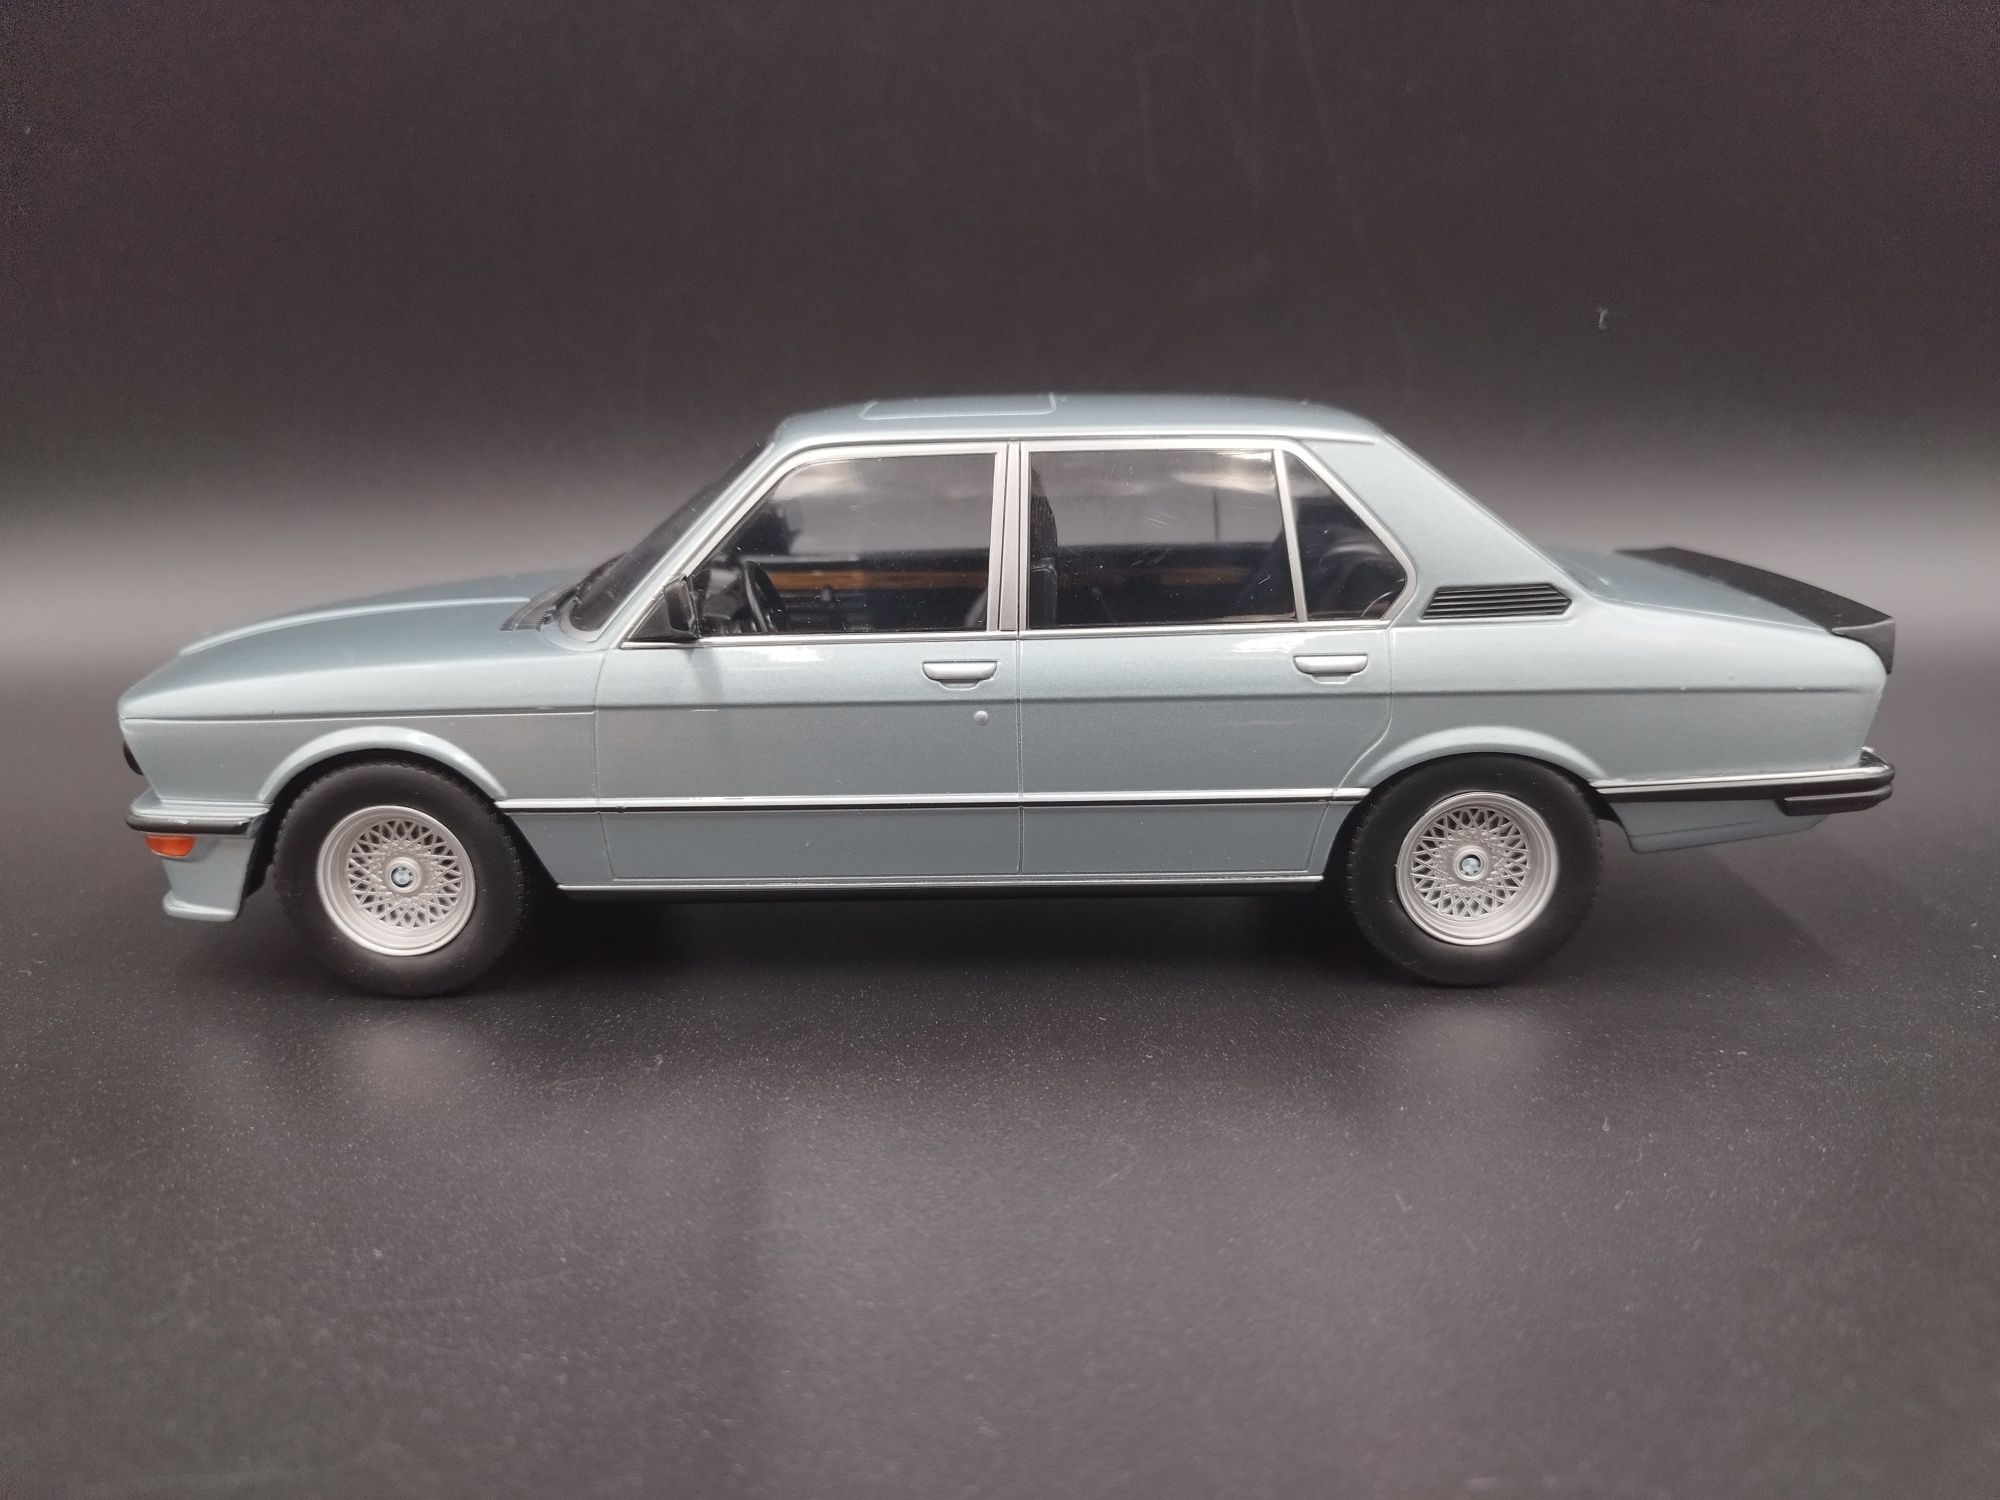 1:18 Norev 1980 BMW M535i E12 –light blue metallic